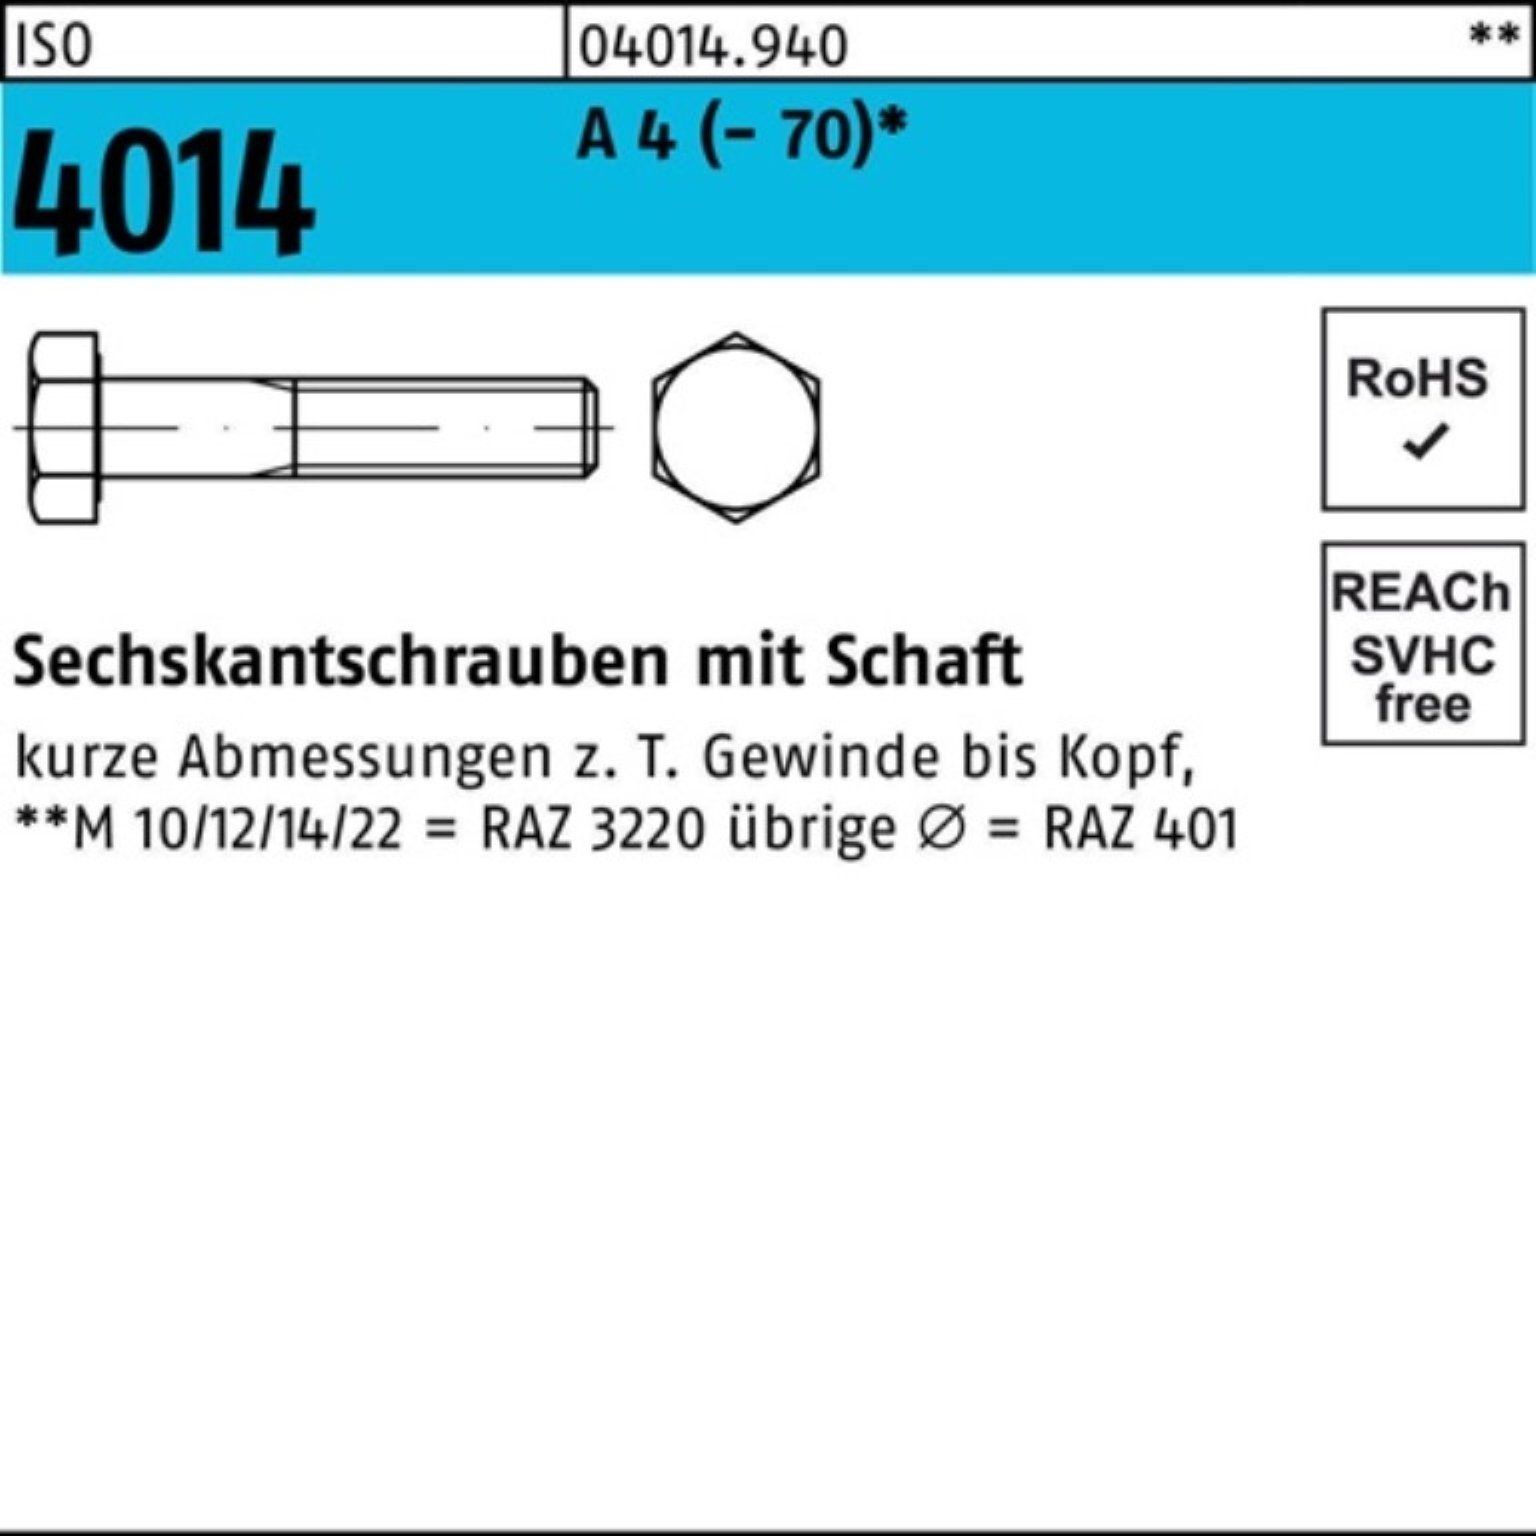 Bufab Sechskantschraube 100er Pack Sechskantschraube ISO 4014 Schaft M6x 100 A 4 (70) 100 St